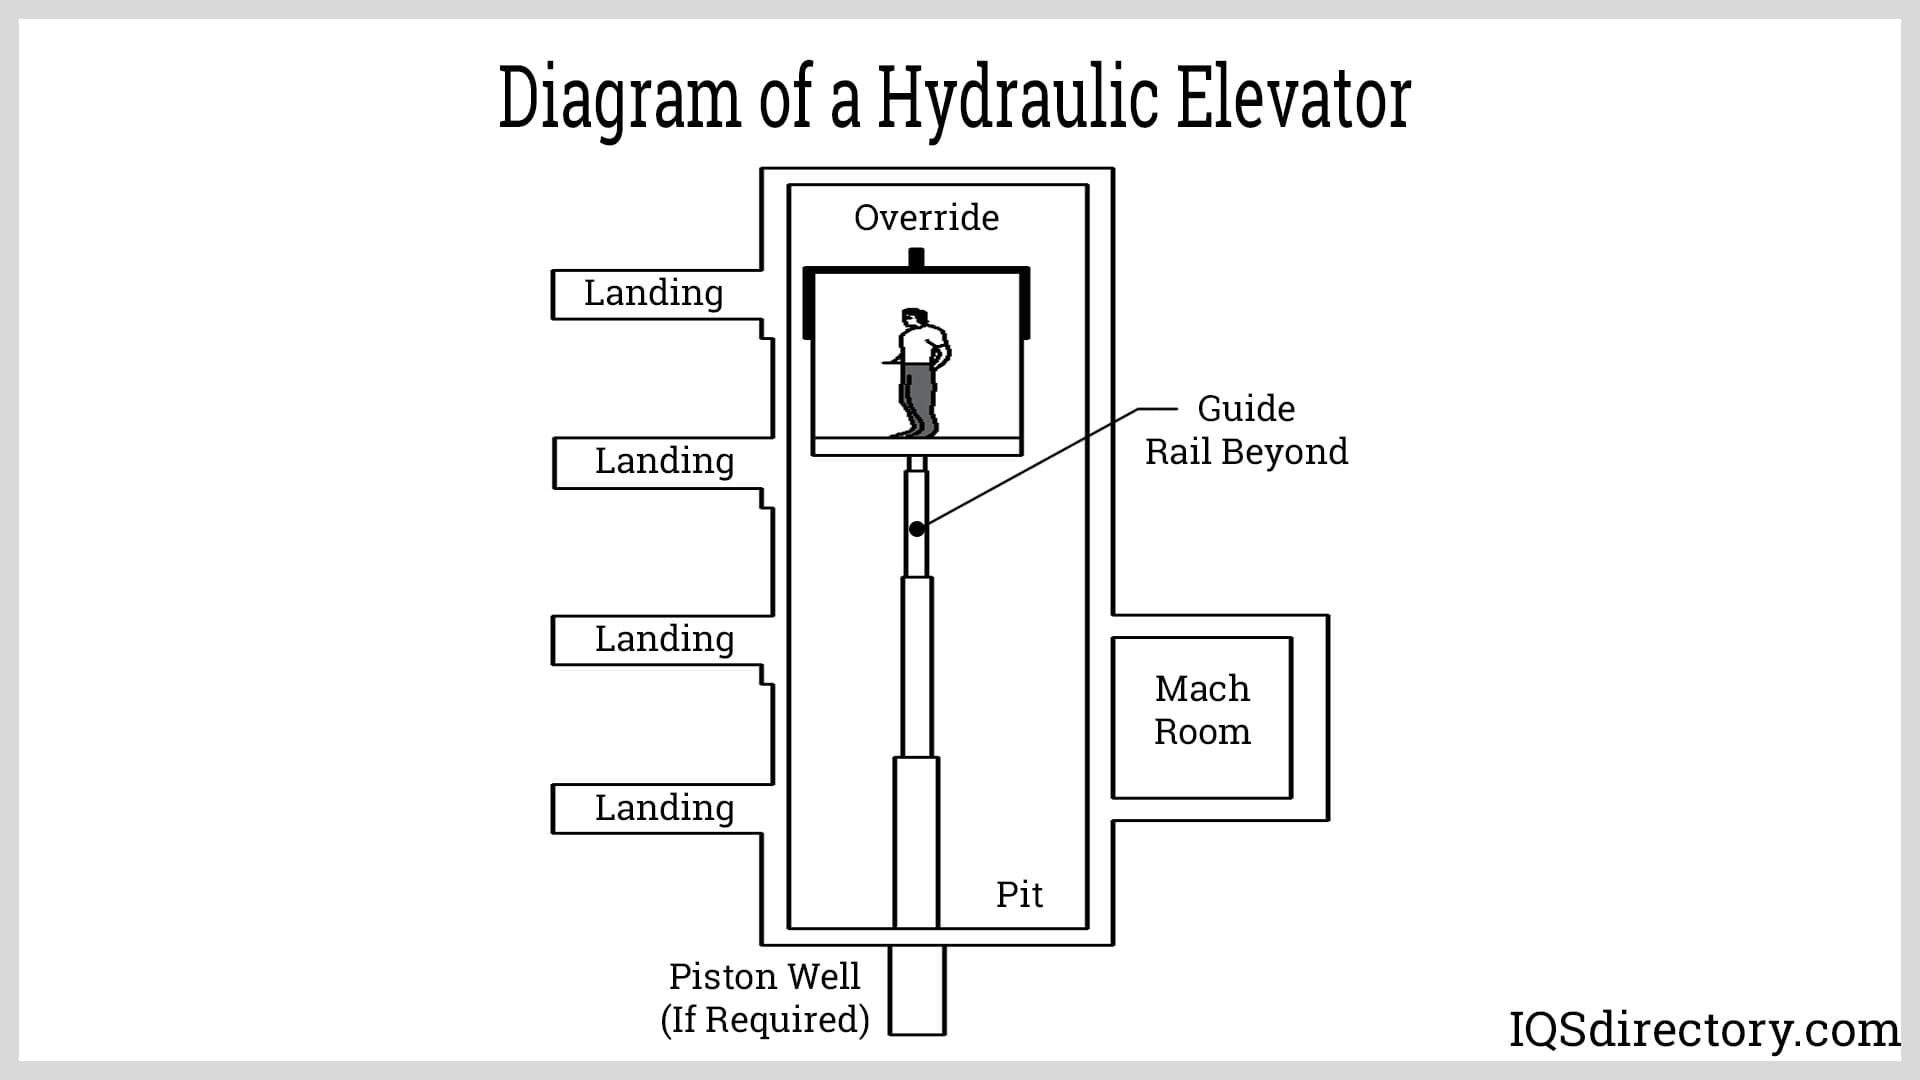 Diagram of a Hydraulic Elevator